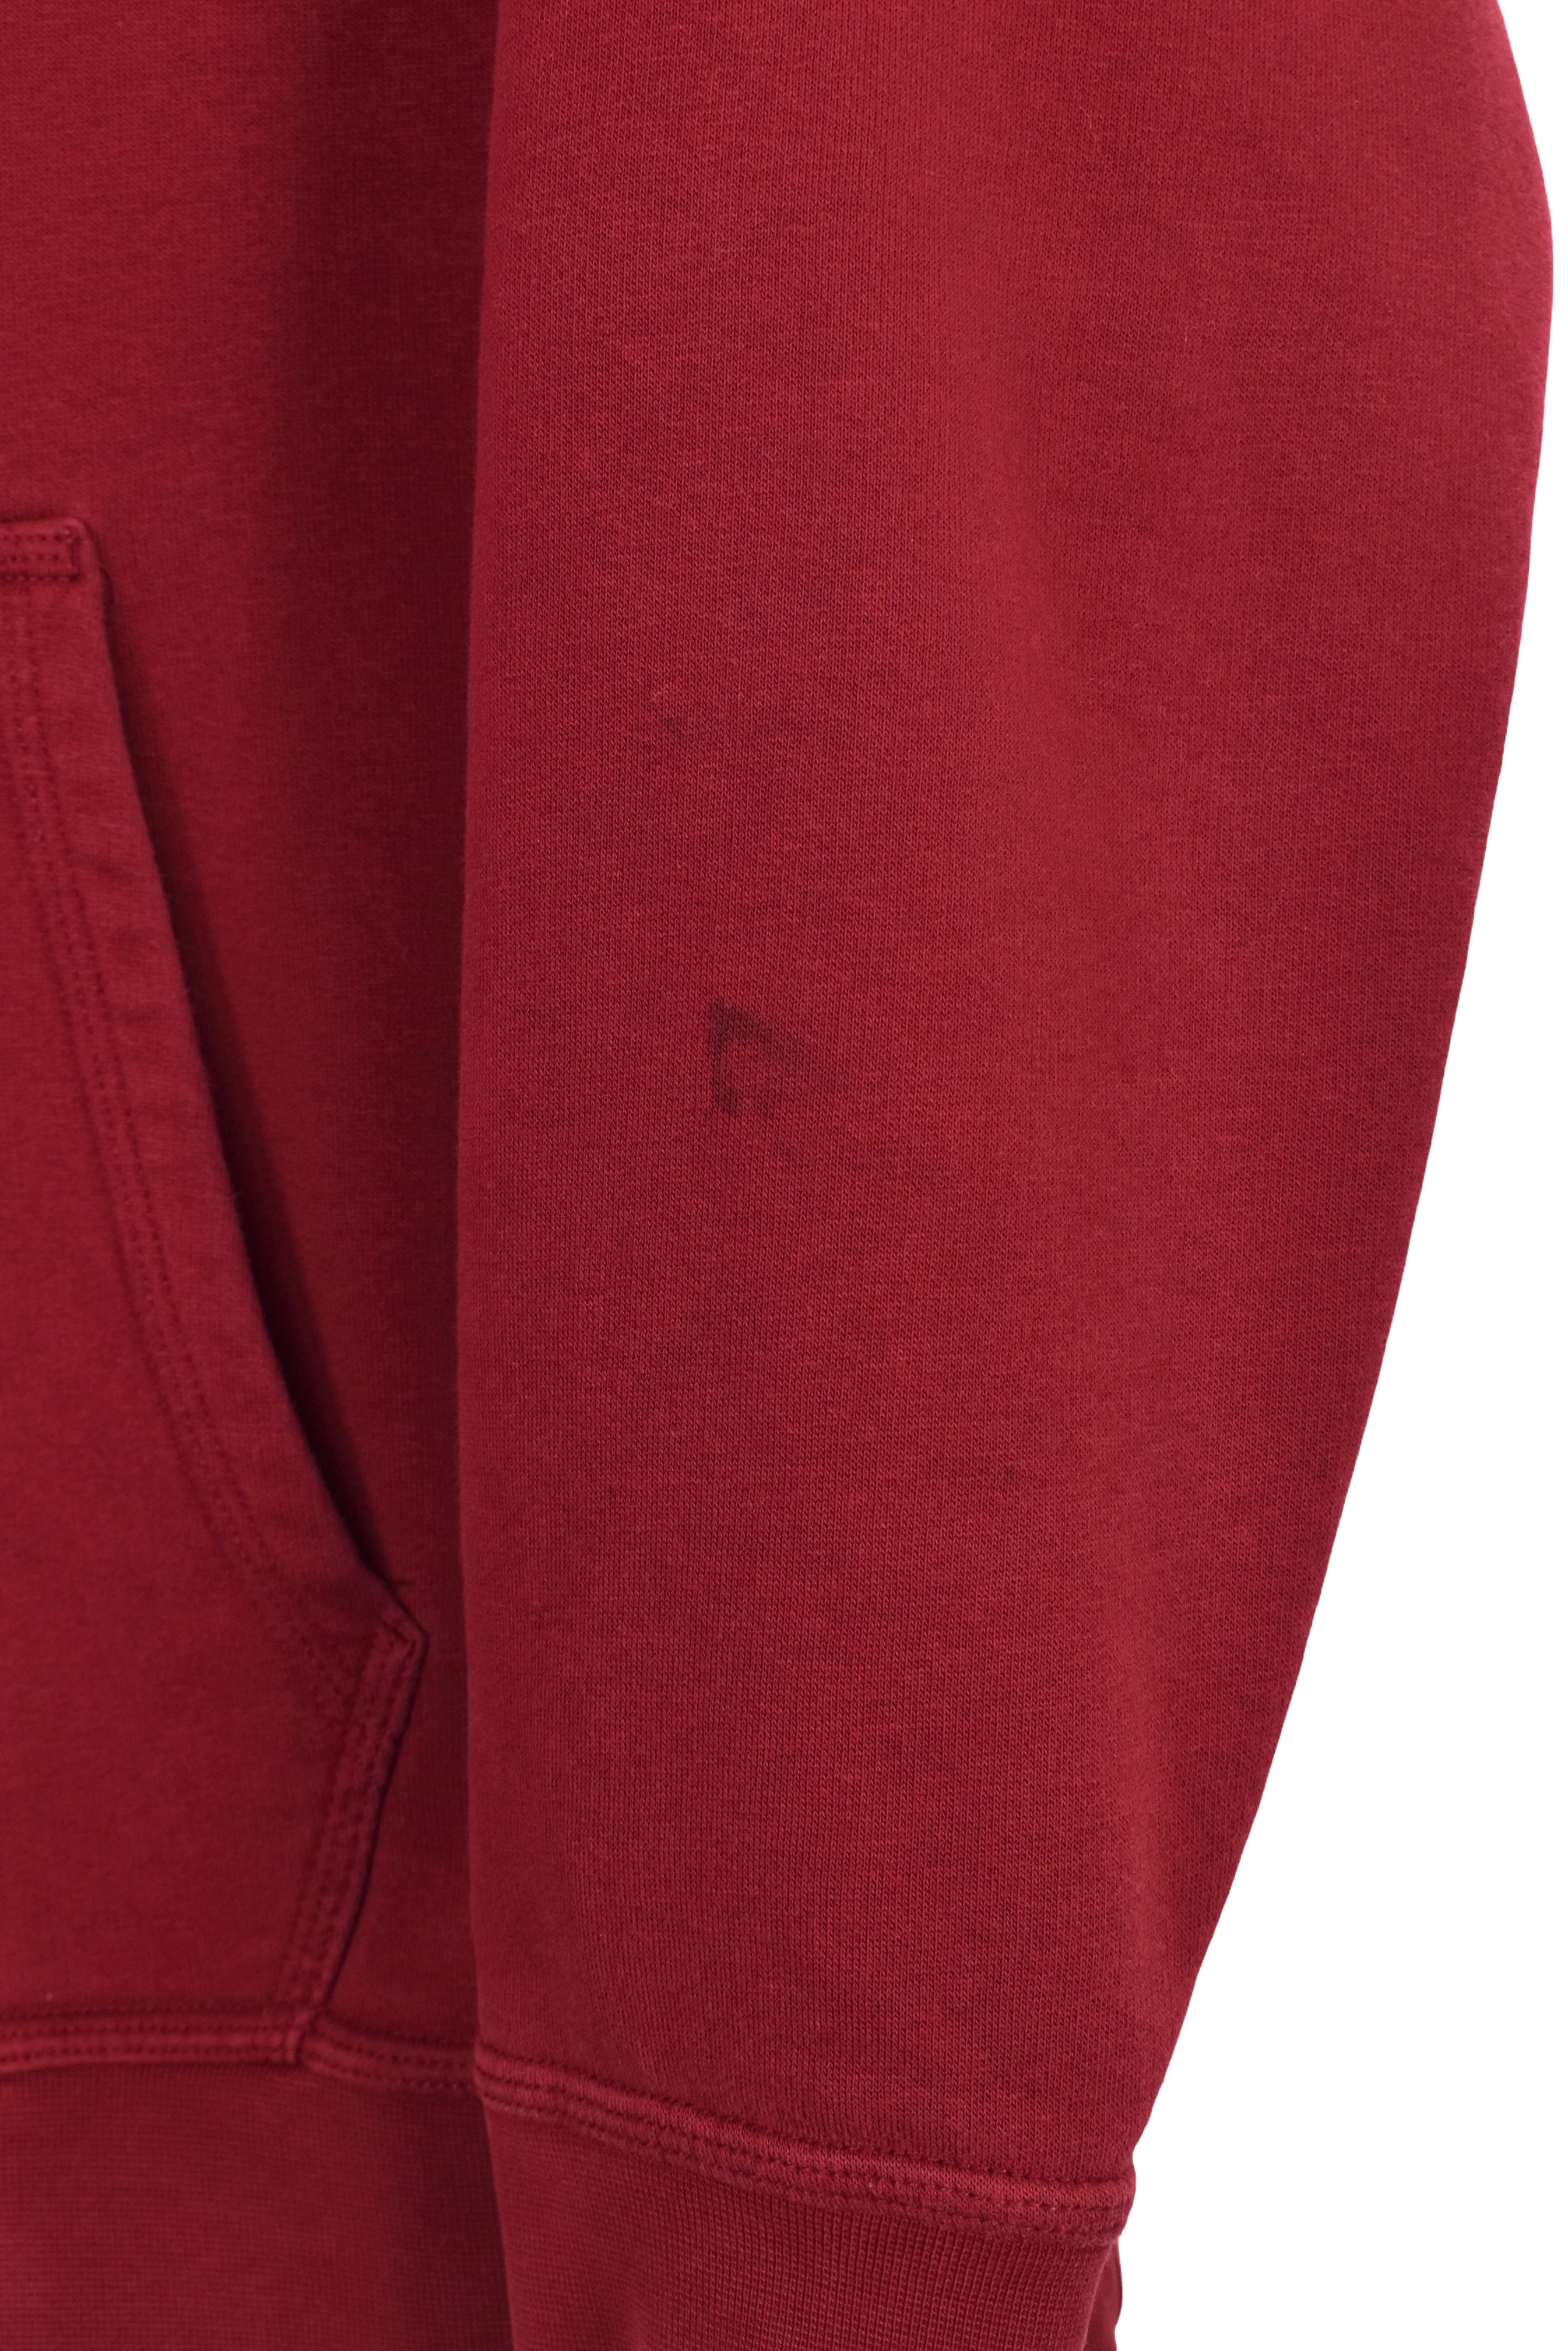 Vintage Nike hoodie (L), burgundy embroidered sweatshirt